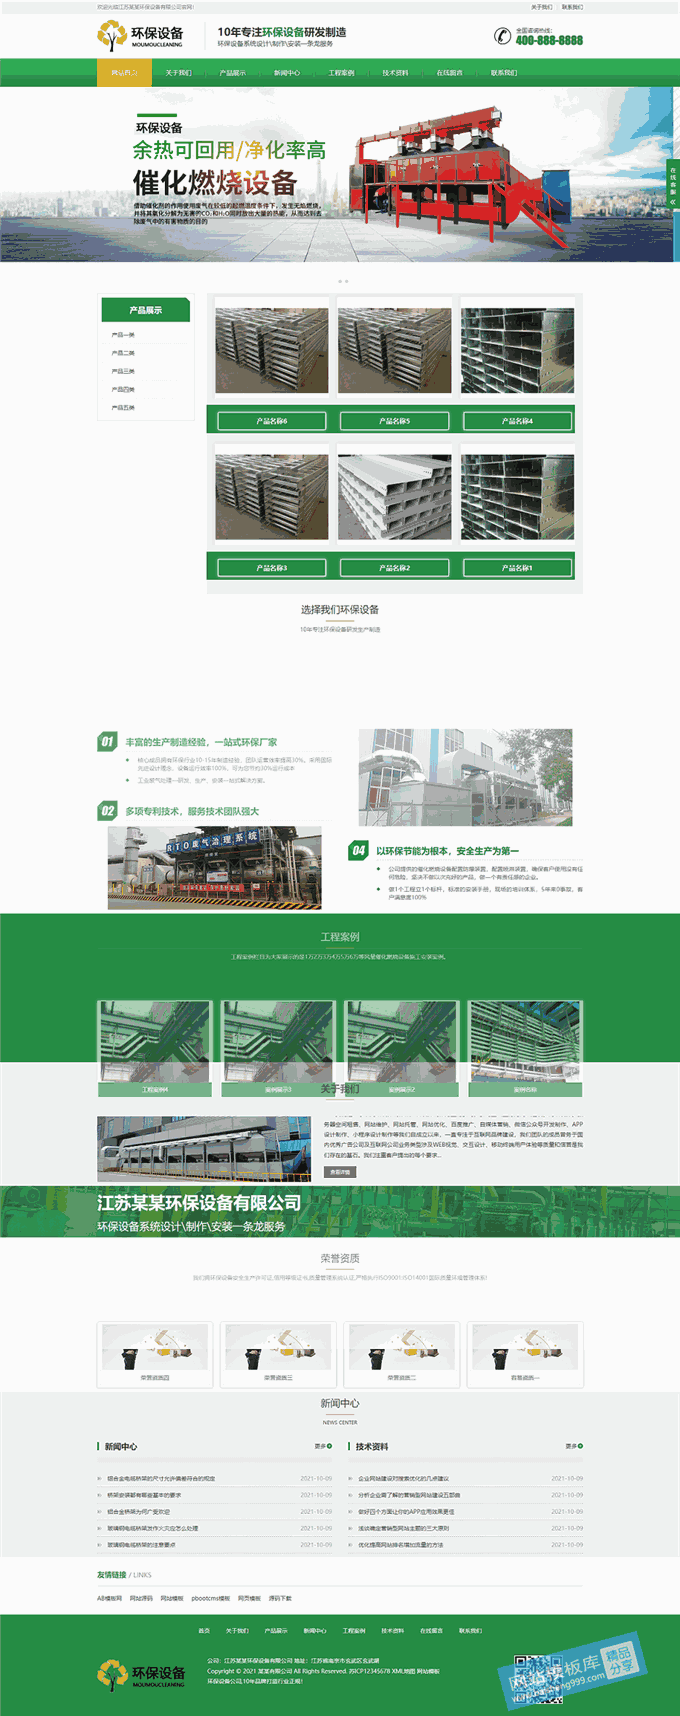 轻便无污染材料节能环保设备销售网站模板首页图